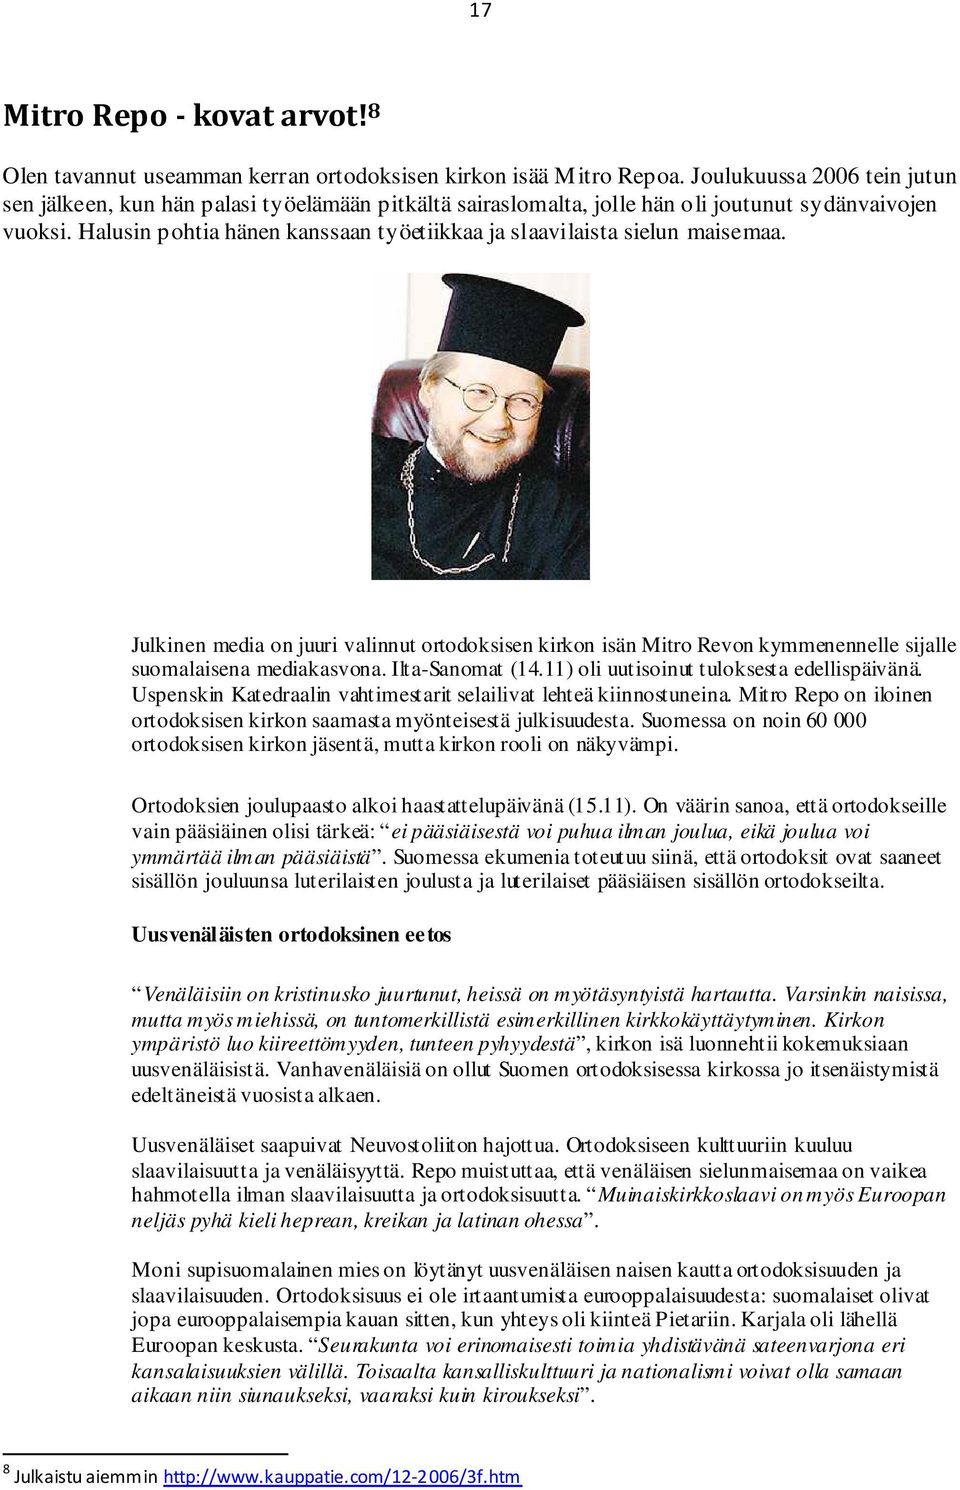 Halusin pohtia hänen kanssaan työetiikkaa ja slaavilaista sielun maisemaa. Julkinen media on juuri valinnut ortodoksisen kirkon isän Mitro Revon kymmenennelle sijalle suomalaisena mediakasvona.